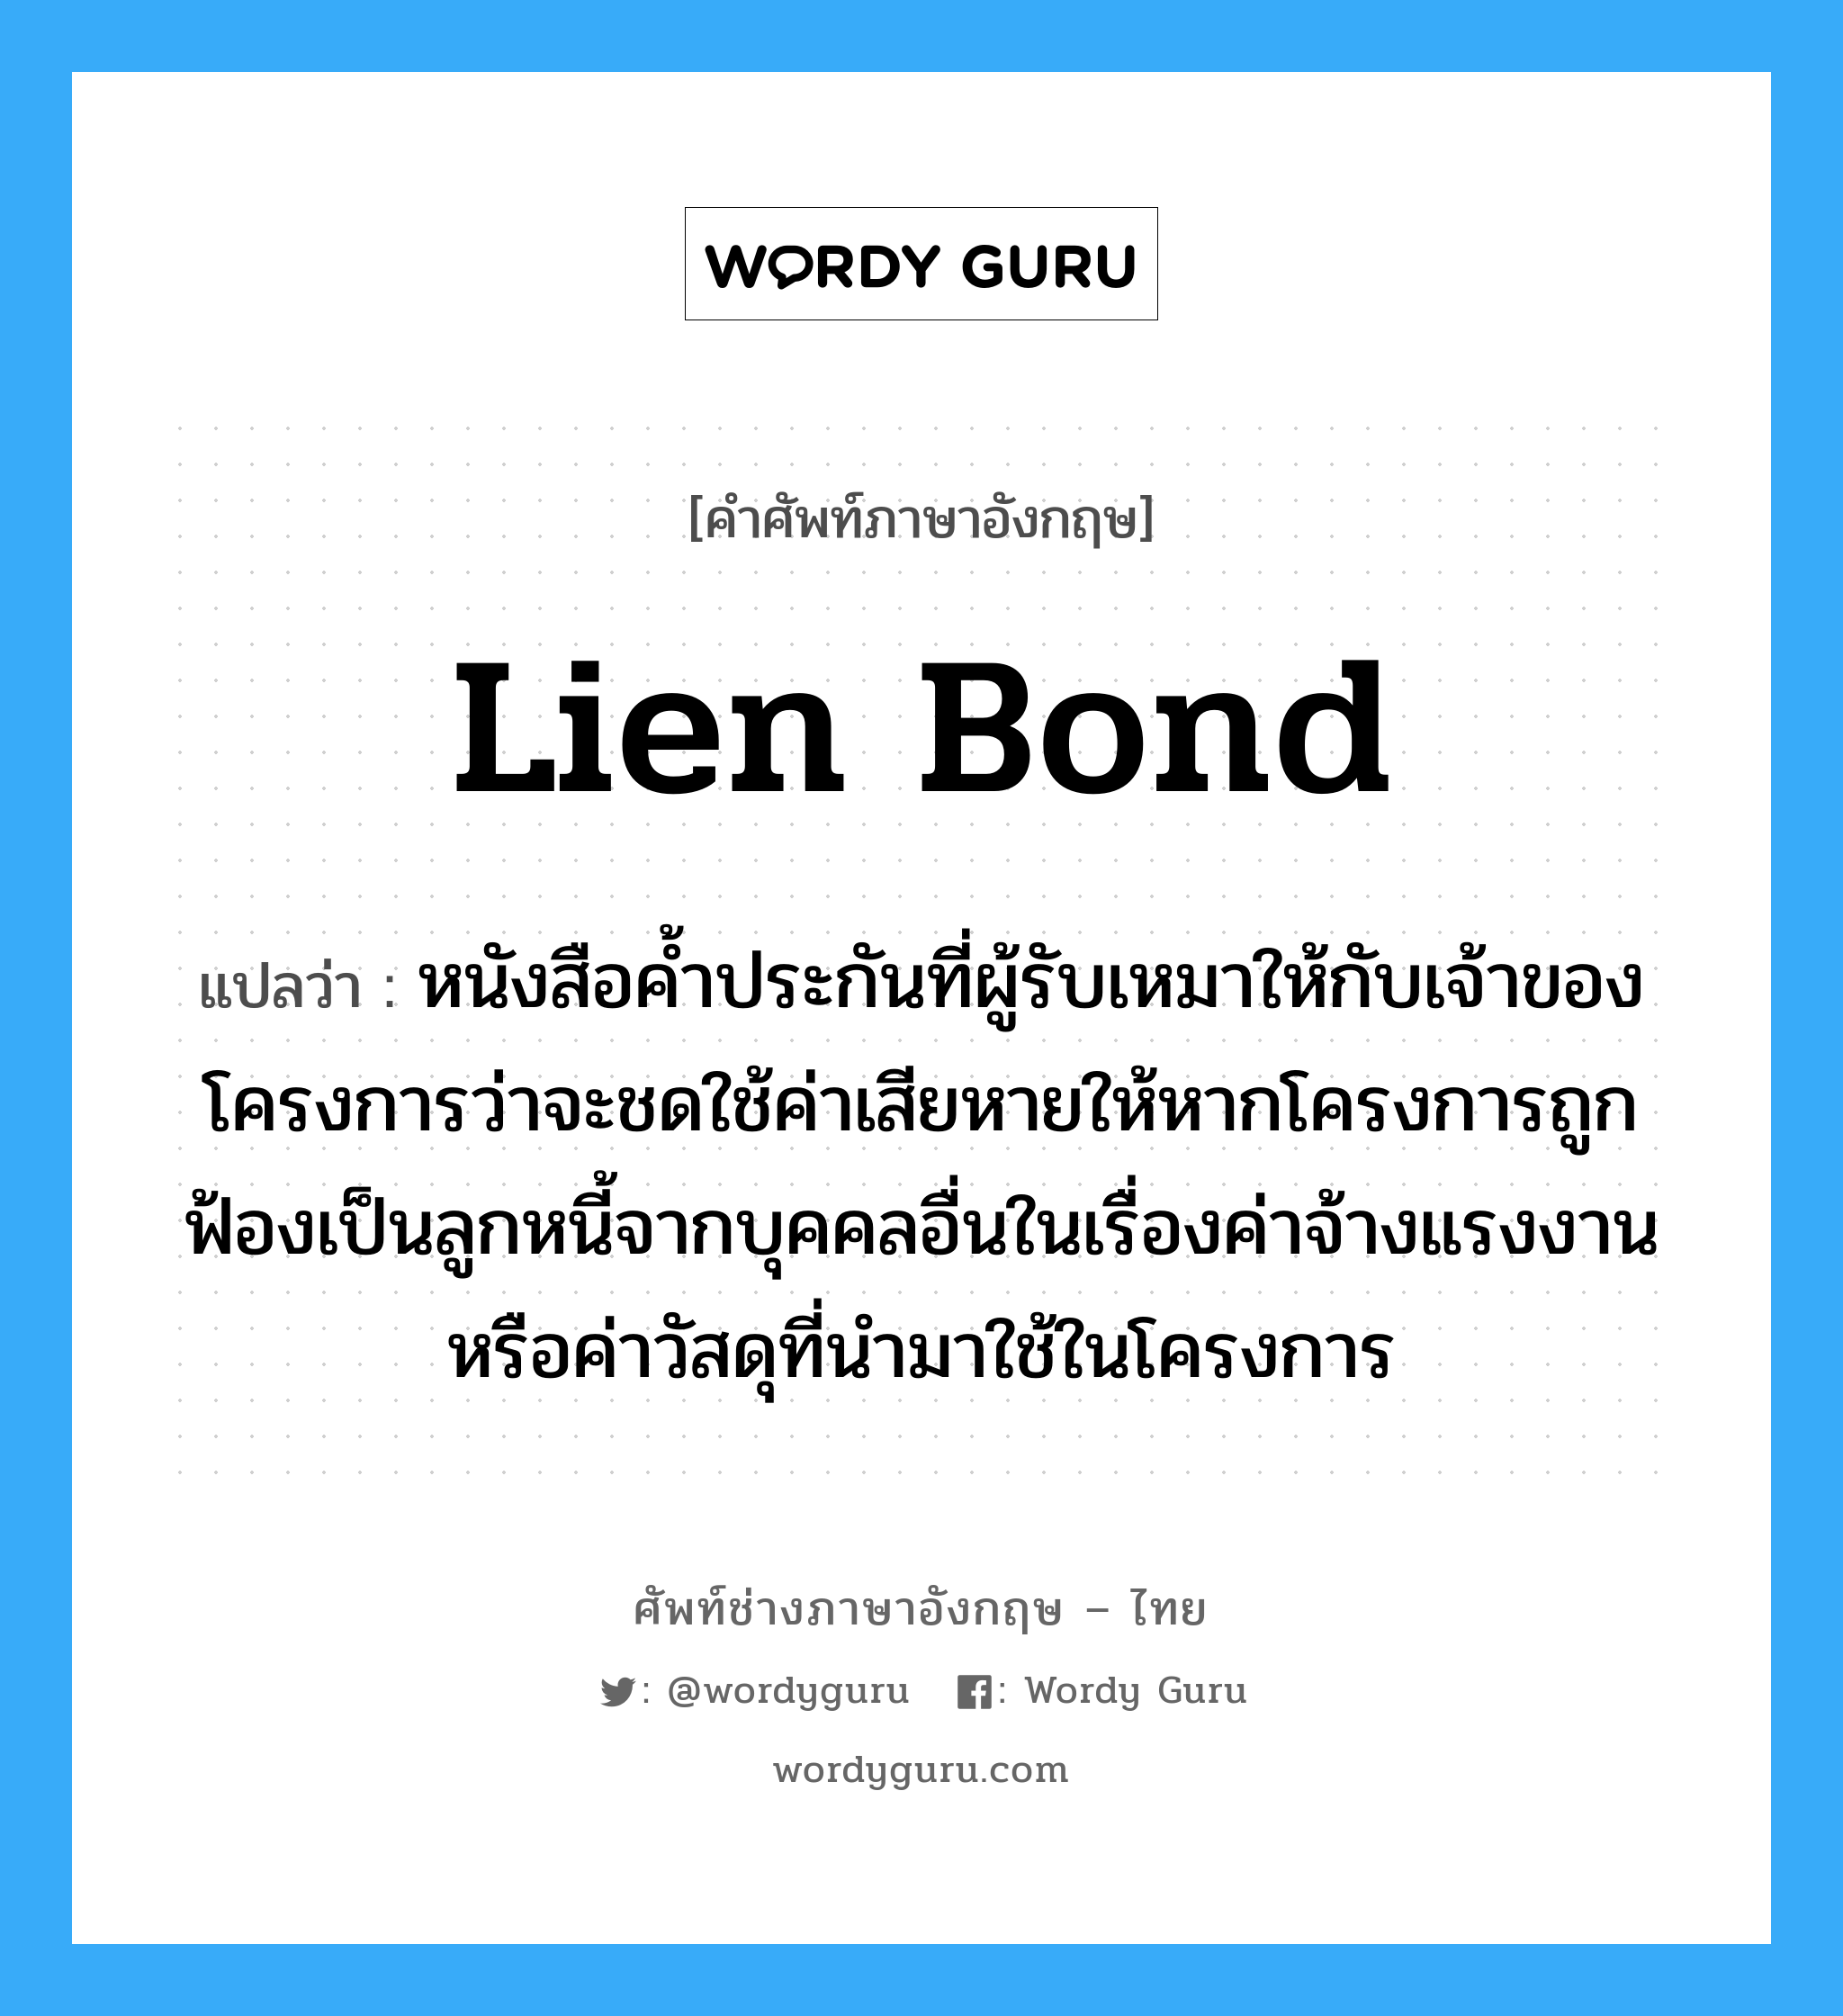 Lien Bond แปลว่า?, คำศัพท์ช่างภาษาอังกฤษ - ไทย Lien Bond คำศัพท์ภาษาอังกฤษ Lien Bond แปลว่า หนังสือค้ำประกันที่ผู้รับเหมาให้กับเจ้าของโครงการว่าจะชดใช้ค่าเสียหายให้หากโครงการถูกฟ้องเป็นลูกหนี้จากบุคคลอื่นในเรื่องค่าจ้างแรงงานหรือค่าวัสดุที่นำมาใช้ในโครงการ